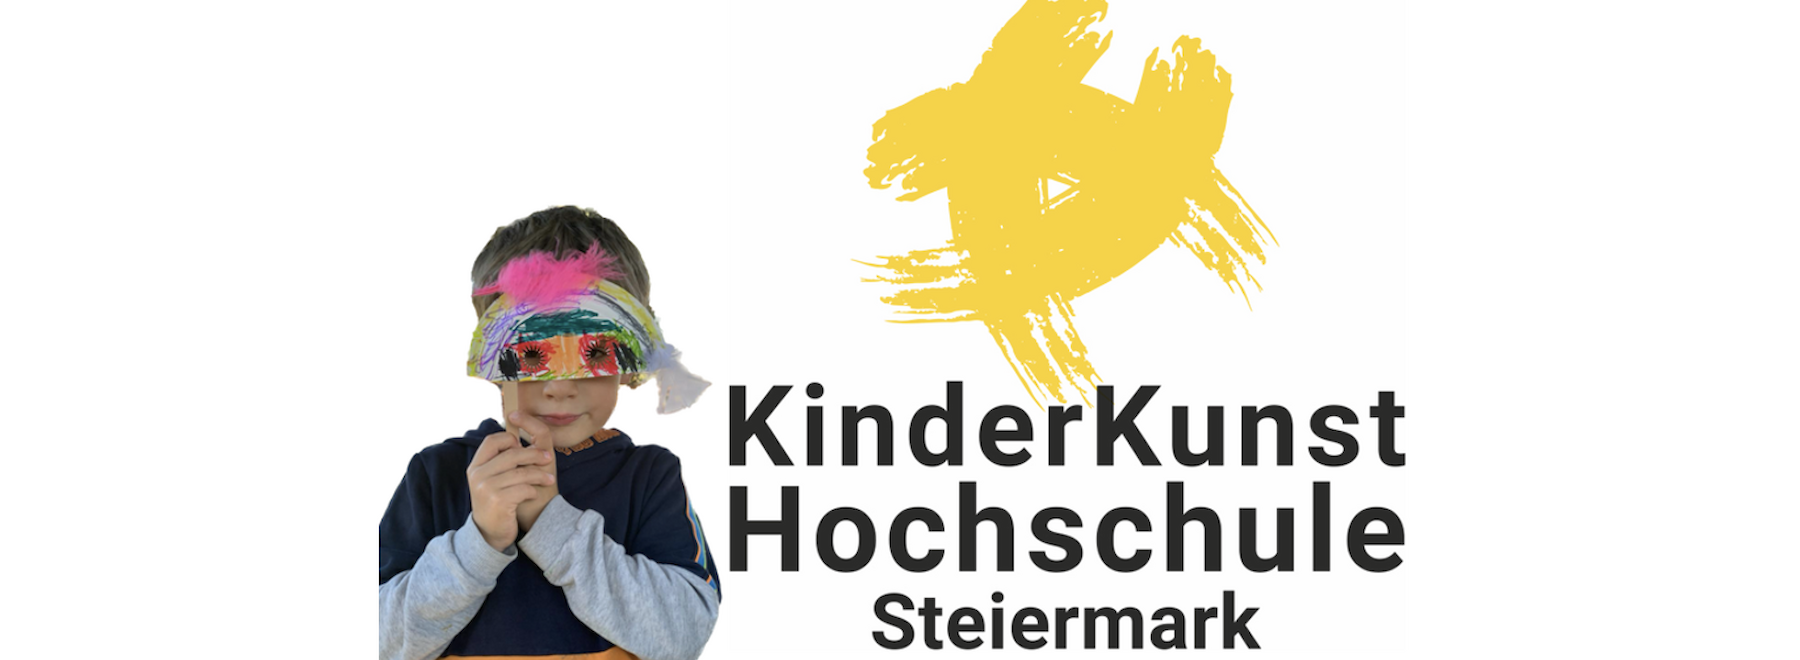 KinderKunstHochschule Steiermark lädt zu kreativen Entdeckungsreisen ein!